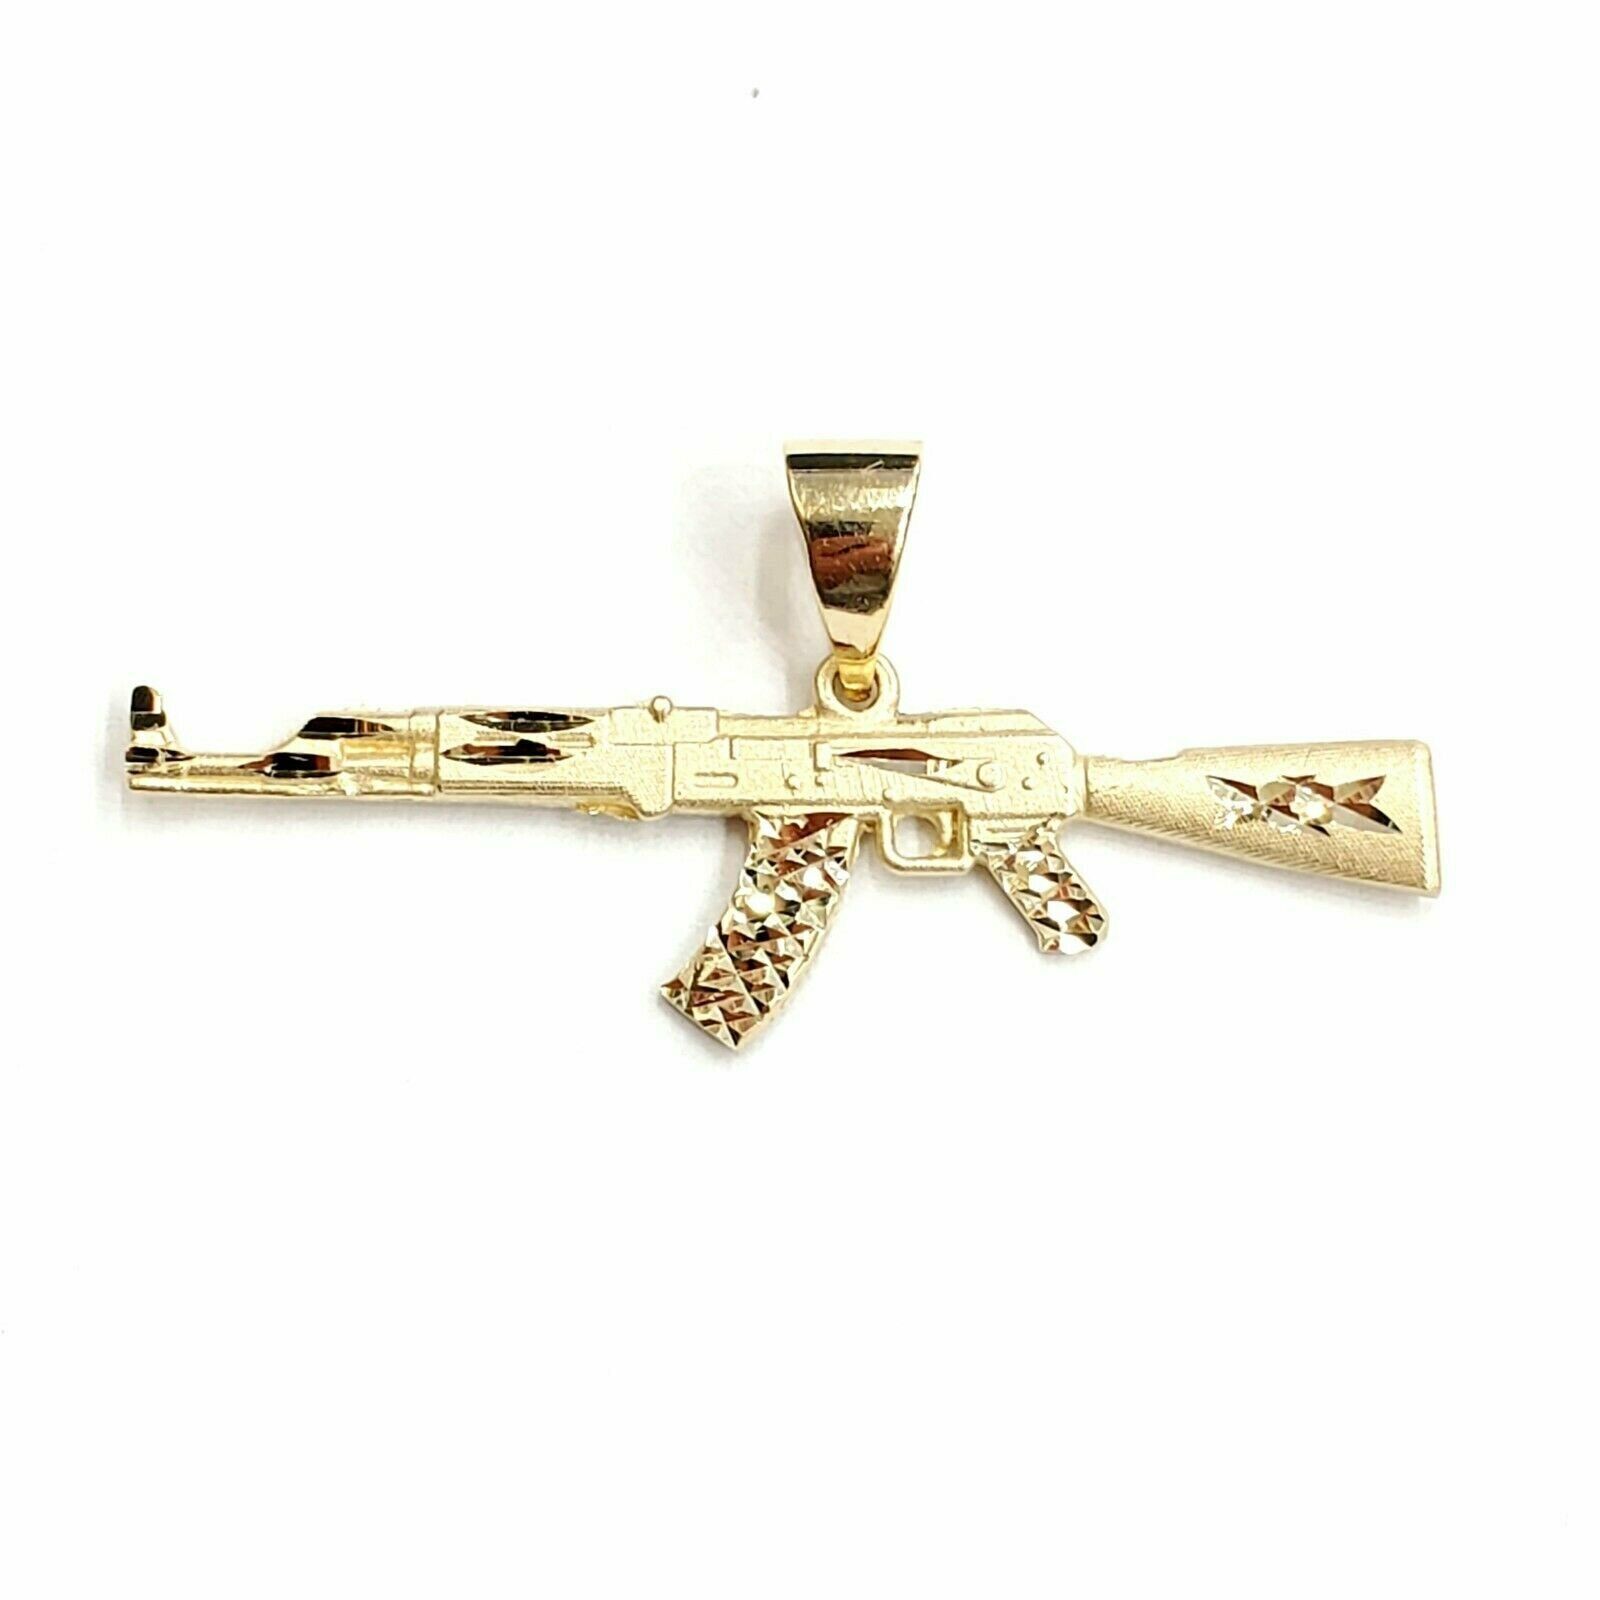 14k yellow Gold AK-47 Machine gun Military Rifle Pendant charm fine gift 3.6g